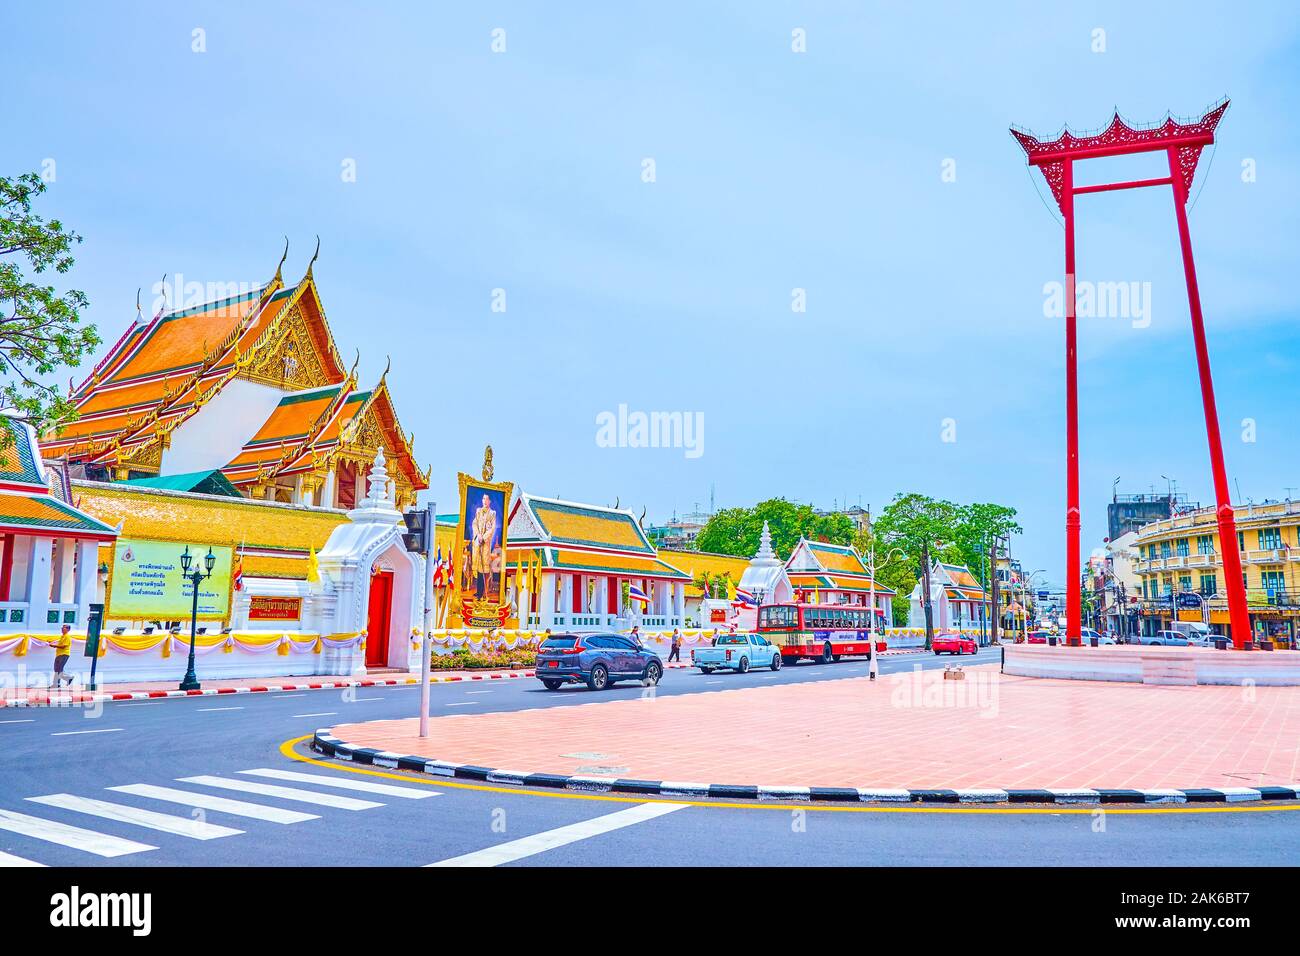 BANGKOK, THAÏLANDE - 15 avril 2019 : Le Wat Suthat temple et l'aile géant structureaare les plus emblématiques de l'historique quartier résidentiel de Banque D'Images